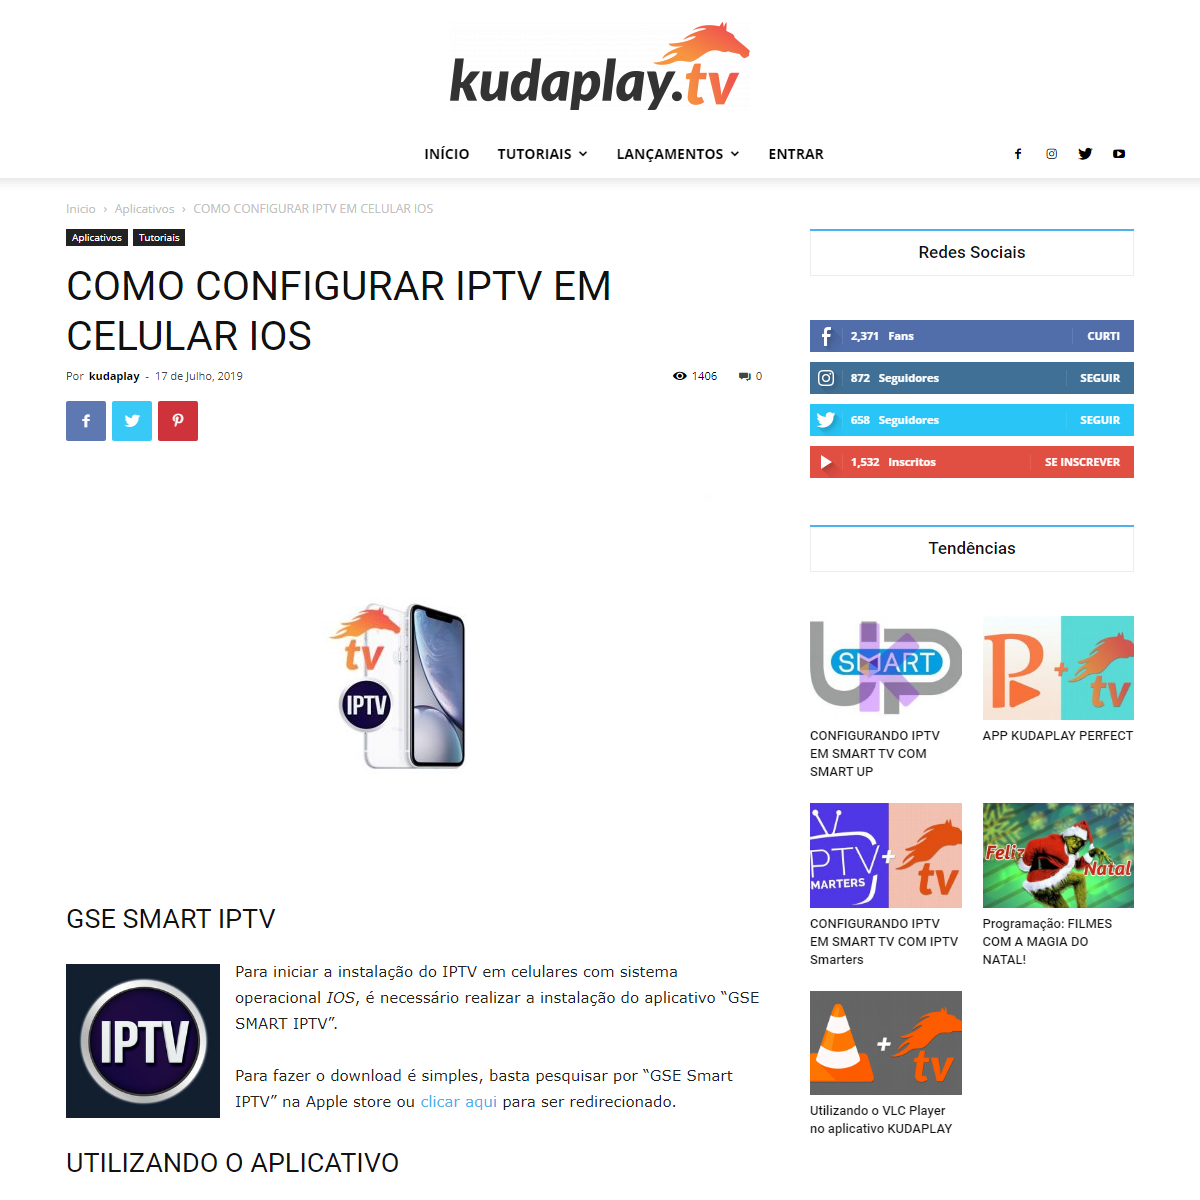 A complete backup of http://kudaplay.tv/blog/como-configurar-iptv-em-celular-ios/